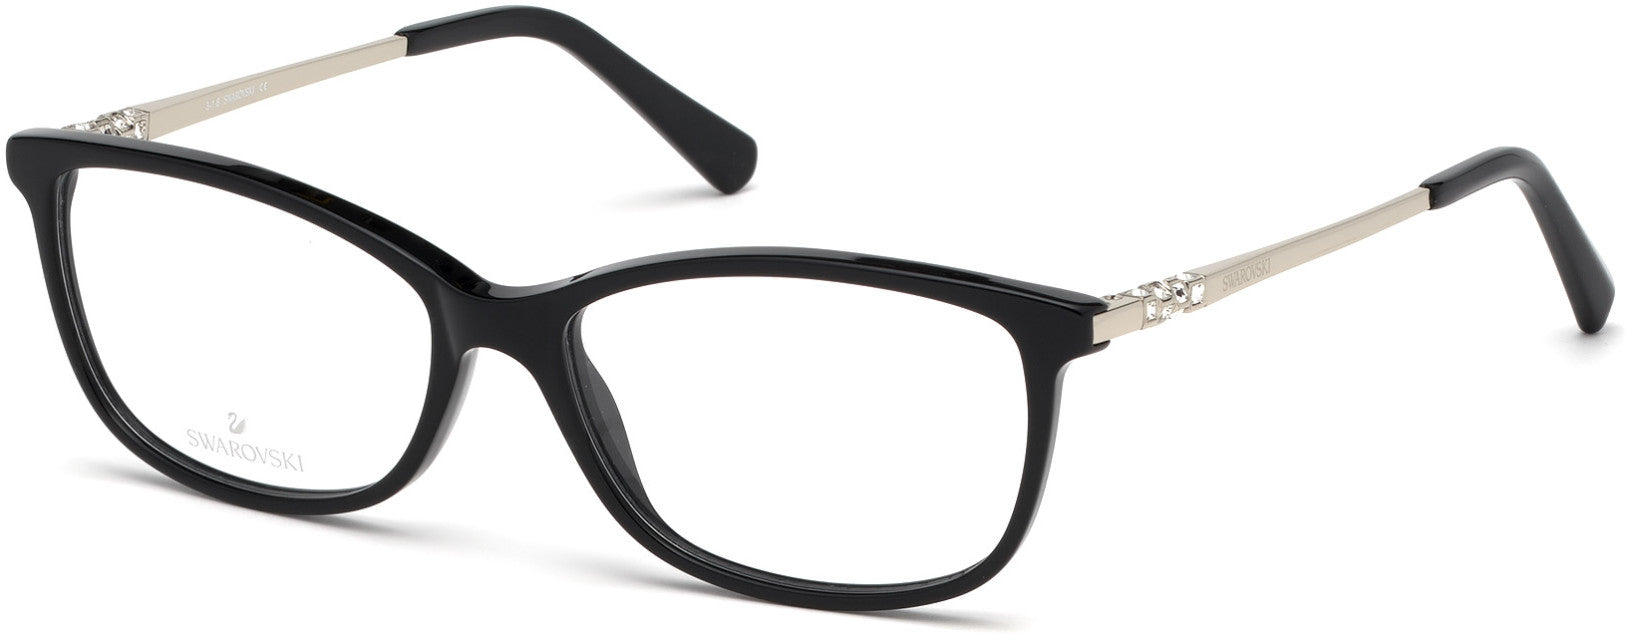 Swarovski SK5285 Rectangular Eyeglasses 001-001 - Shiny Black